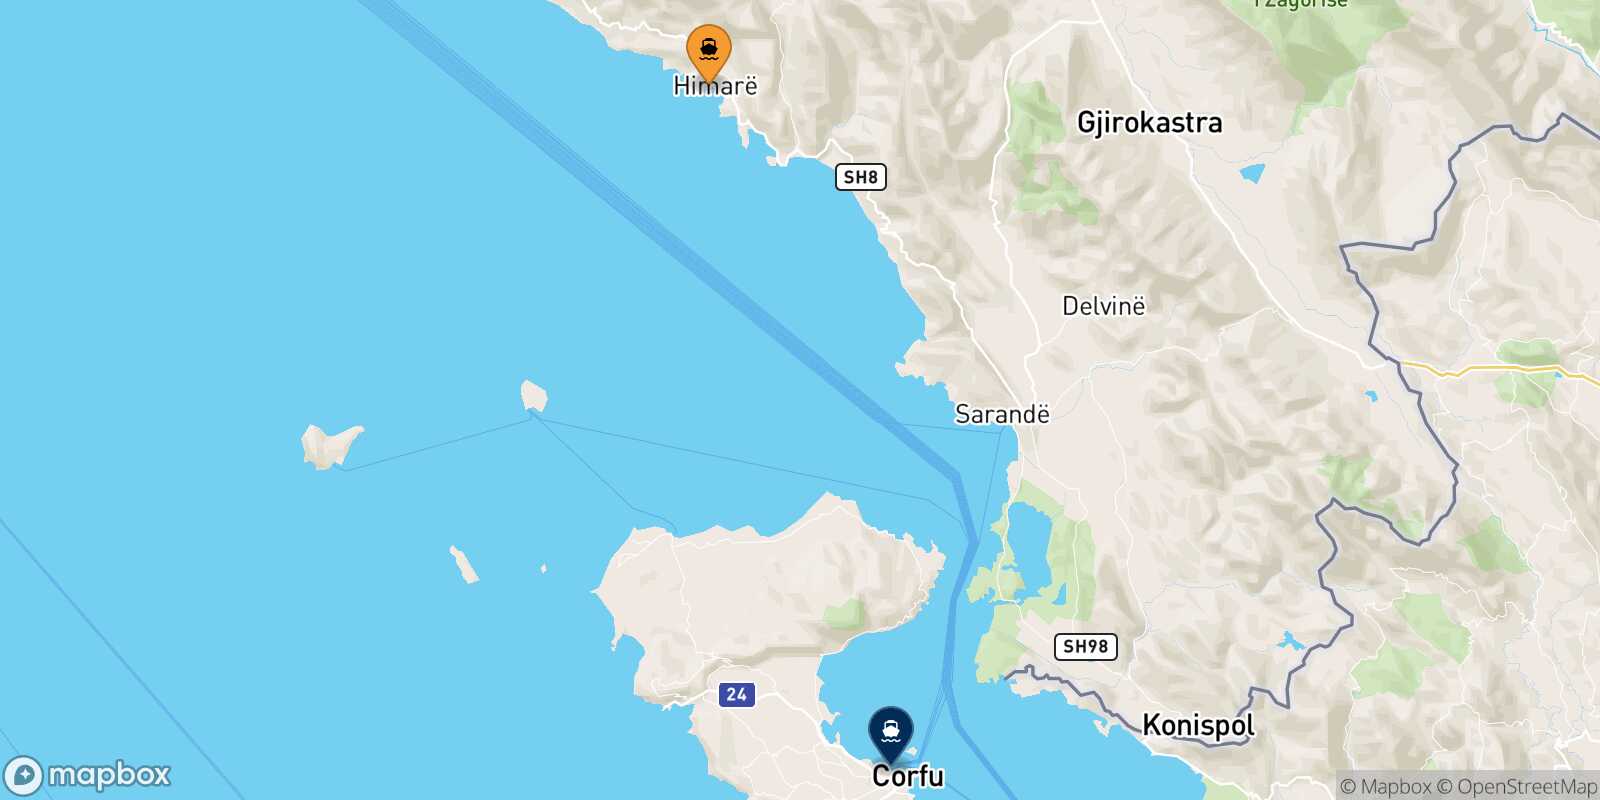 Mapa de la ruta Himare Corfu